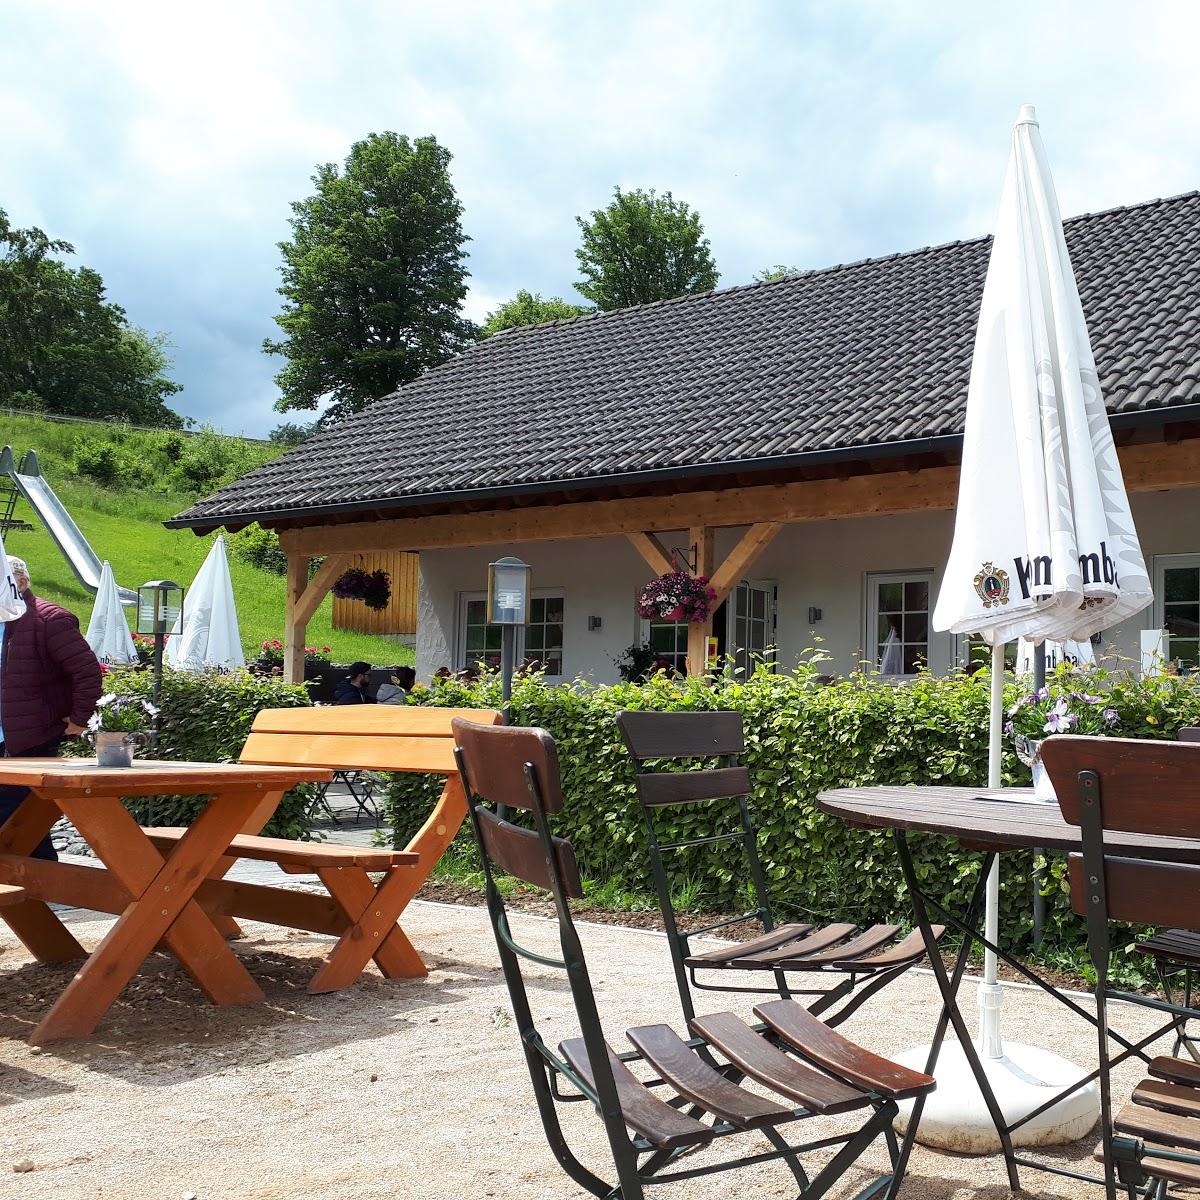 Restaurant "Gaststube zum Minigolf" in Olpe